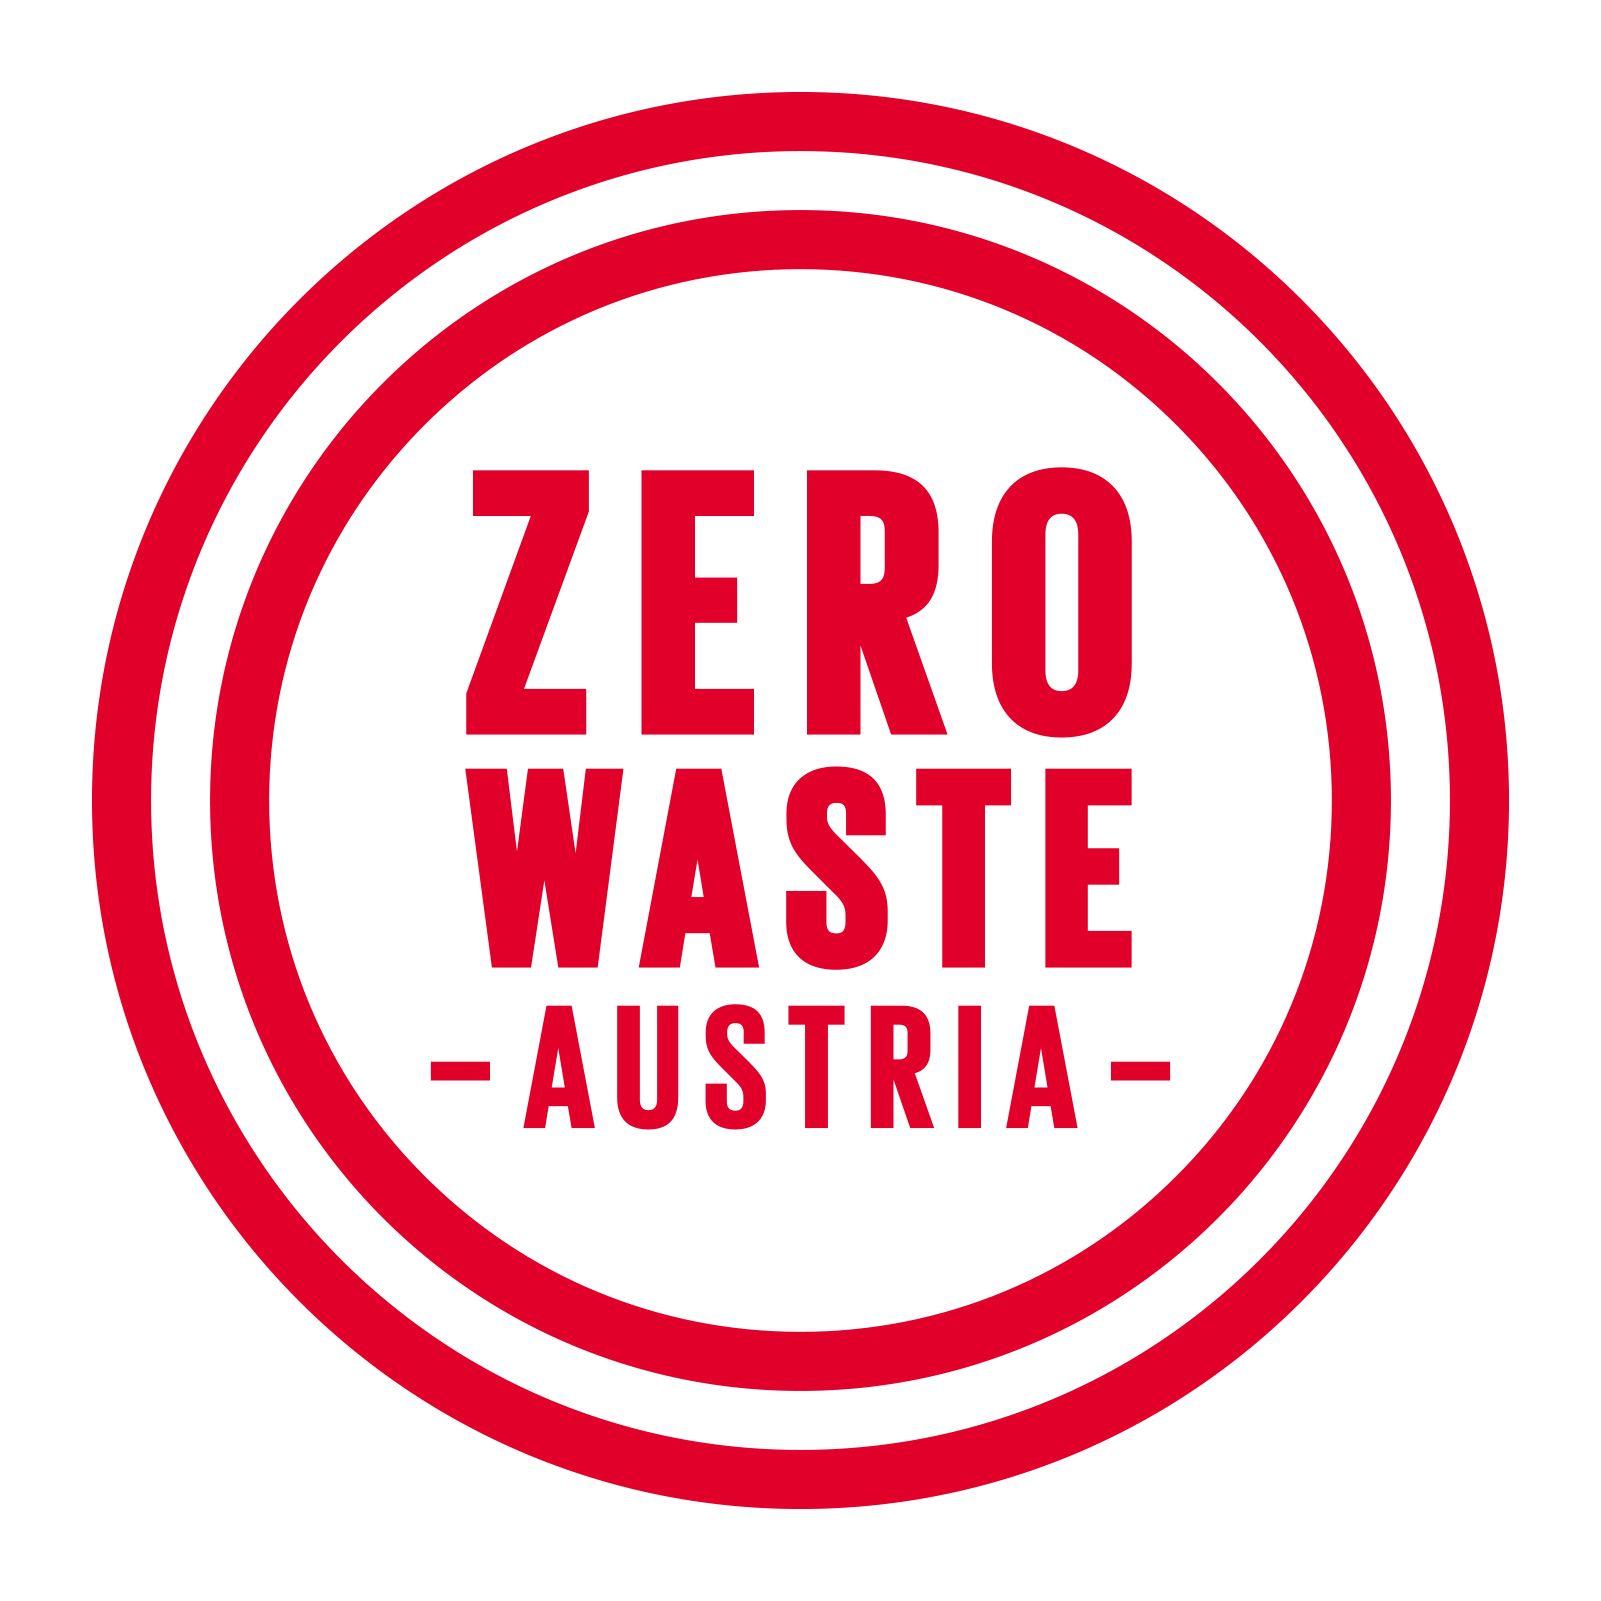 Austria Logo - Zero Waste Austria to Protect Resources Waste